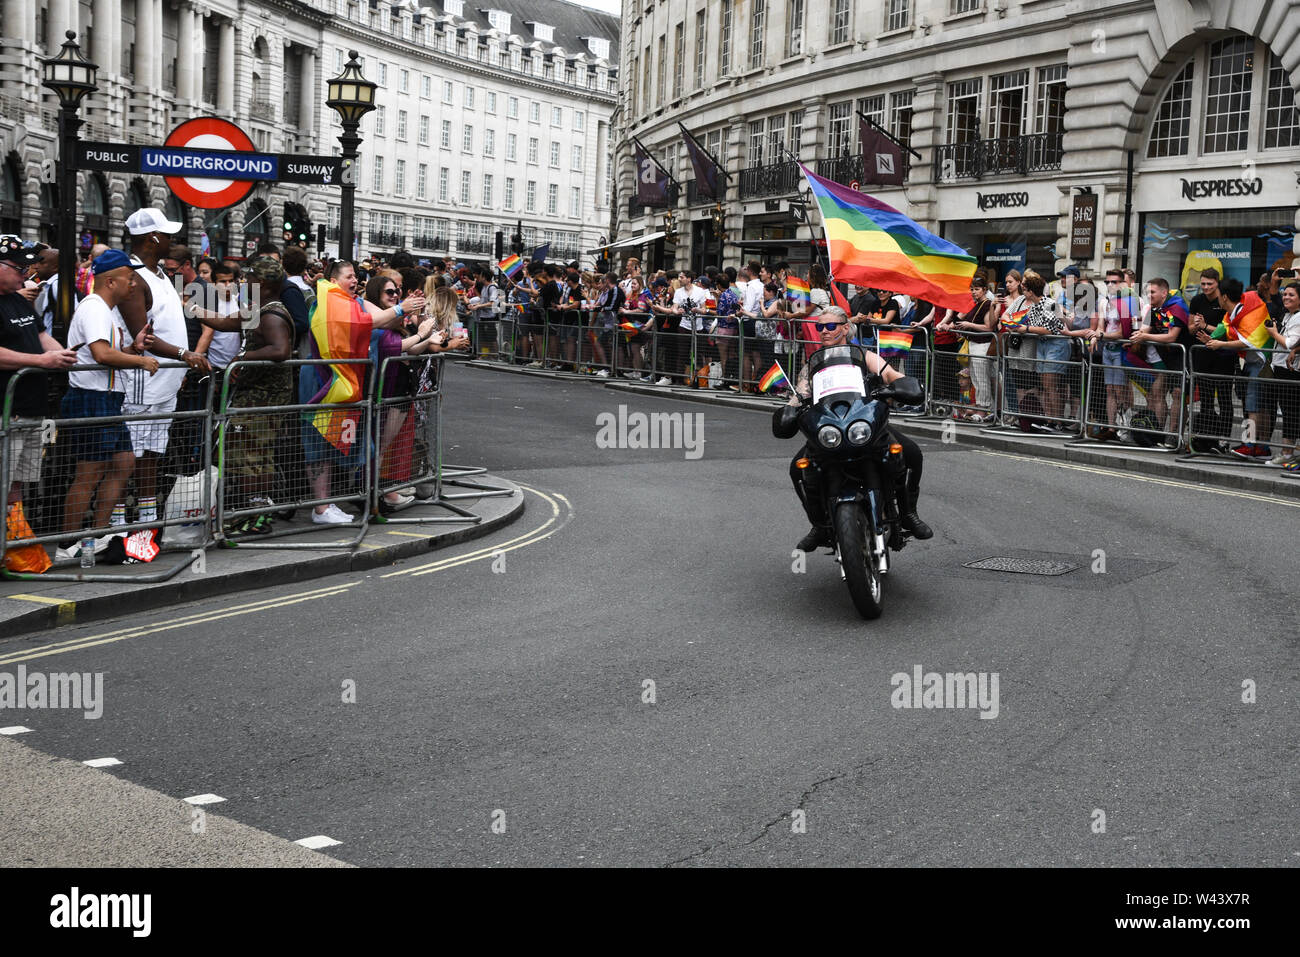 London, Großbritannien, 6. Juli 2019: Stolz Menschen und Anhänger auf Sport Motorräder, an der berühmten Pride Parade Parade am 6. Juli in London Stockfoto